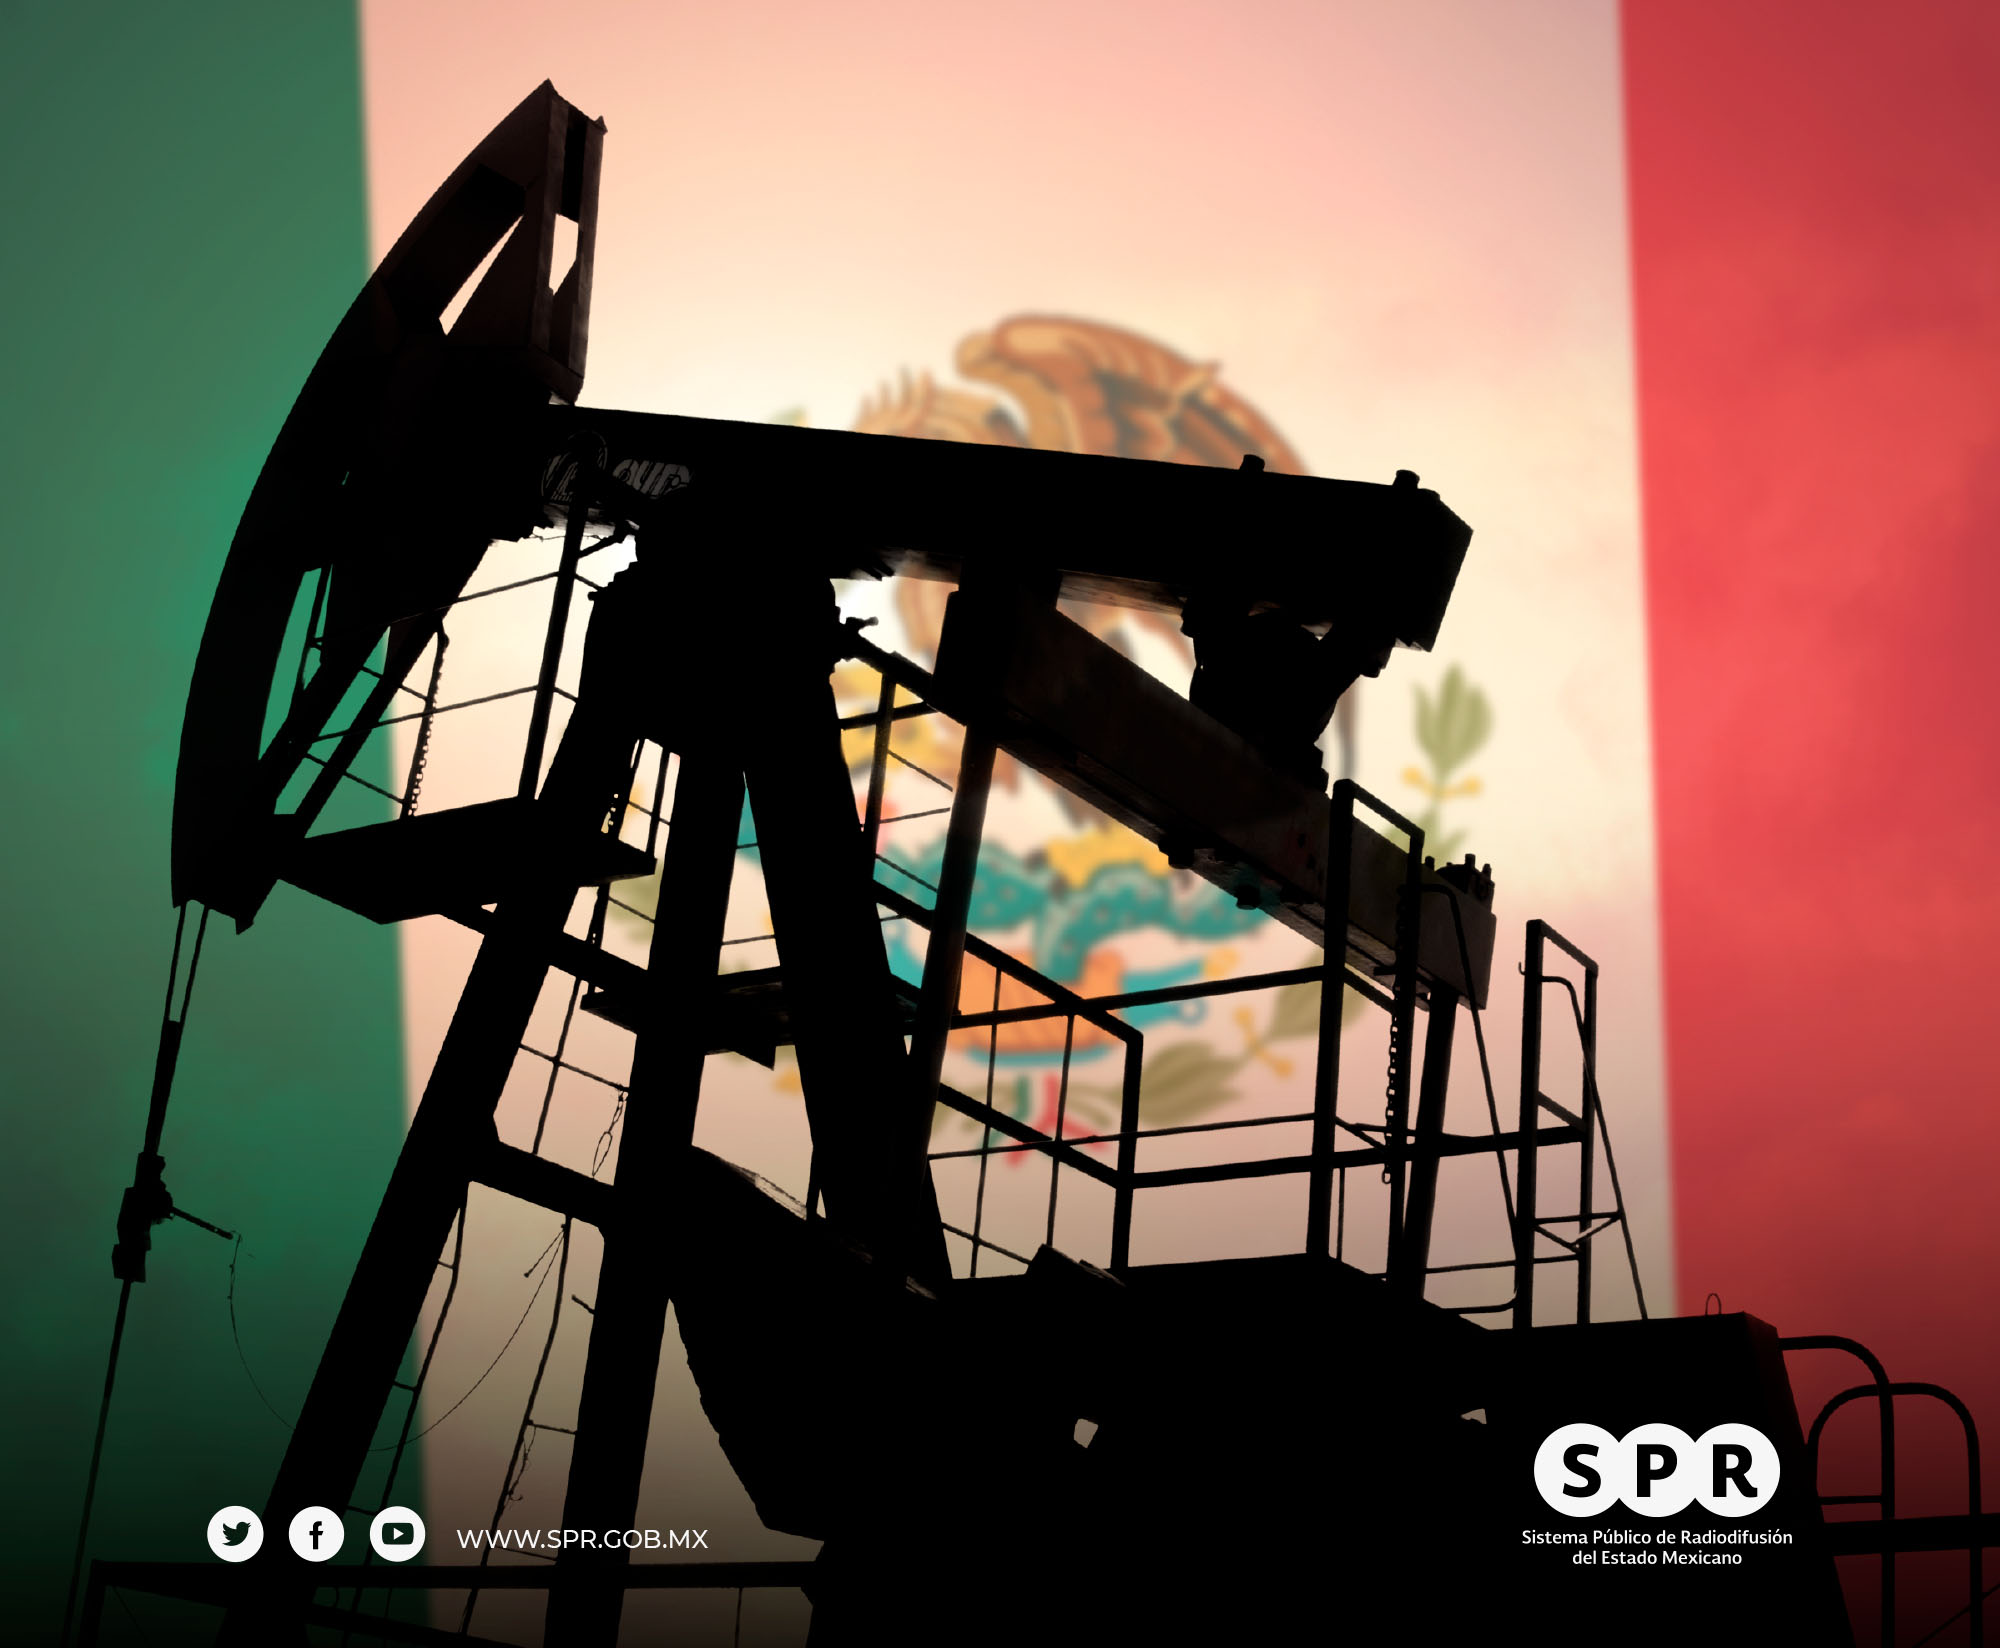 Canal Catorce, del SPR, y Capital 21, realizarán cobertura informativa conjunta de la conmemoración de los 85 años de la Expropiación Petrolera